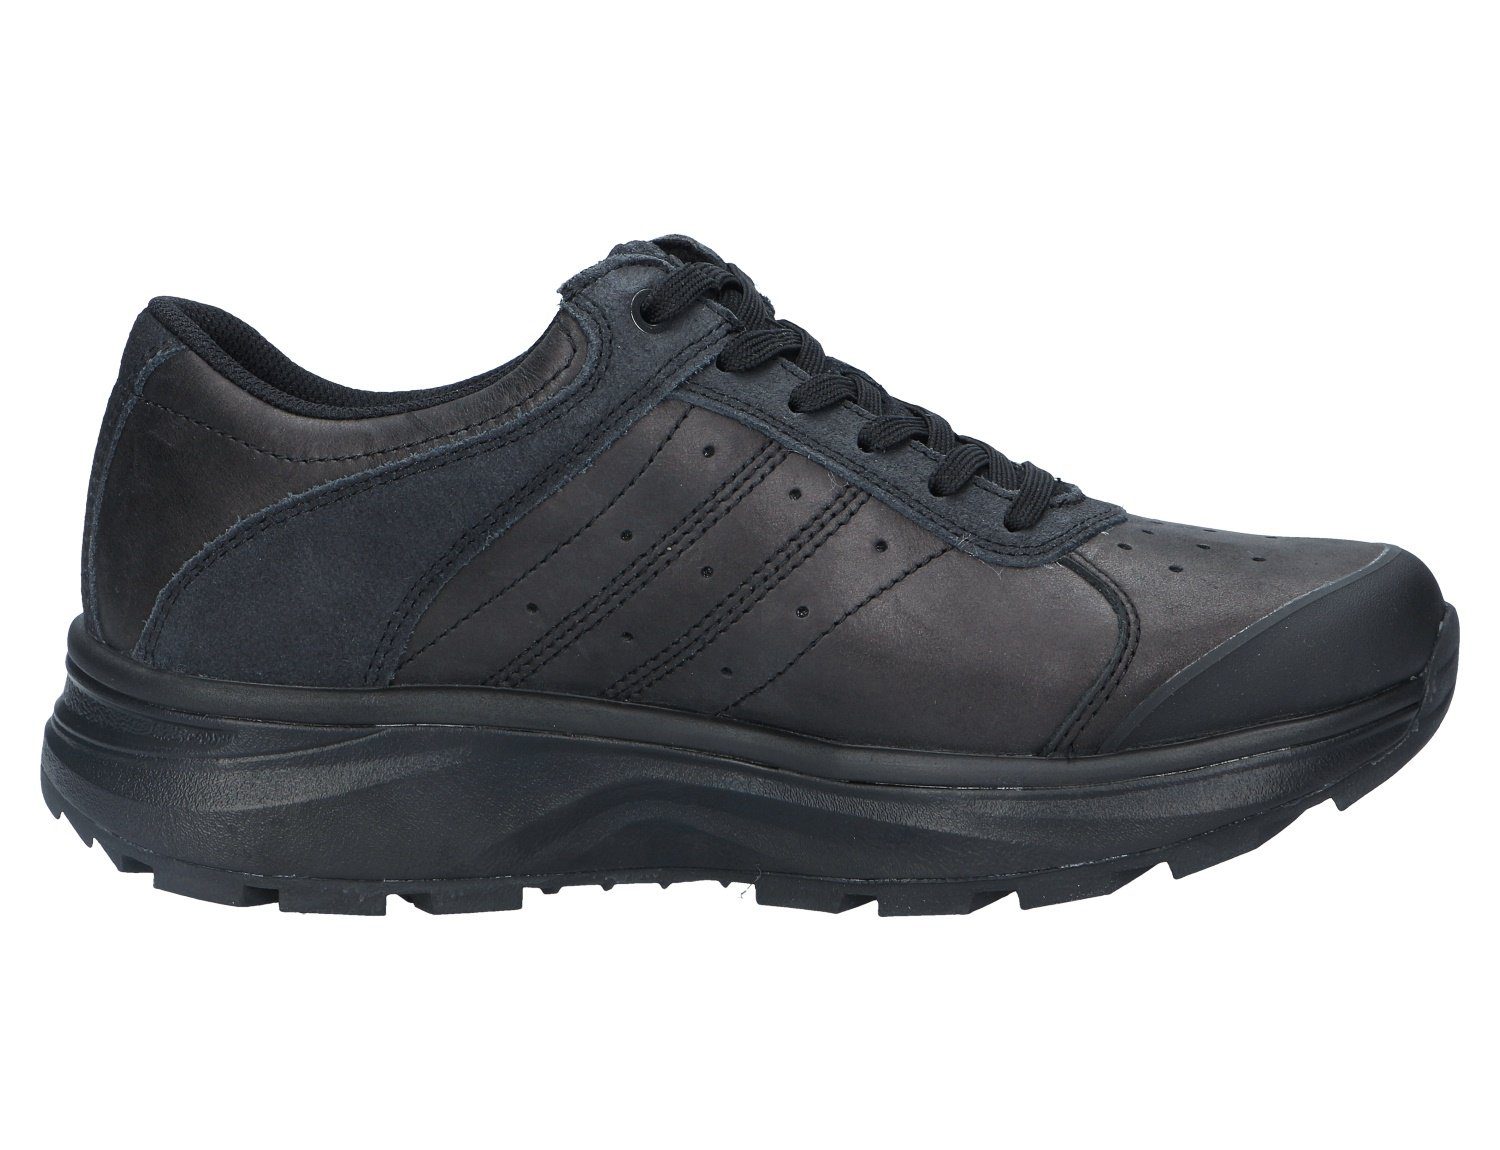 Schuhe Outdoorschuhe Joya INNSBRUCK LOW PTX BLACK Wanderschuh Robuste Qualität